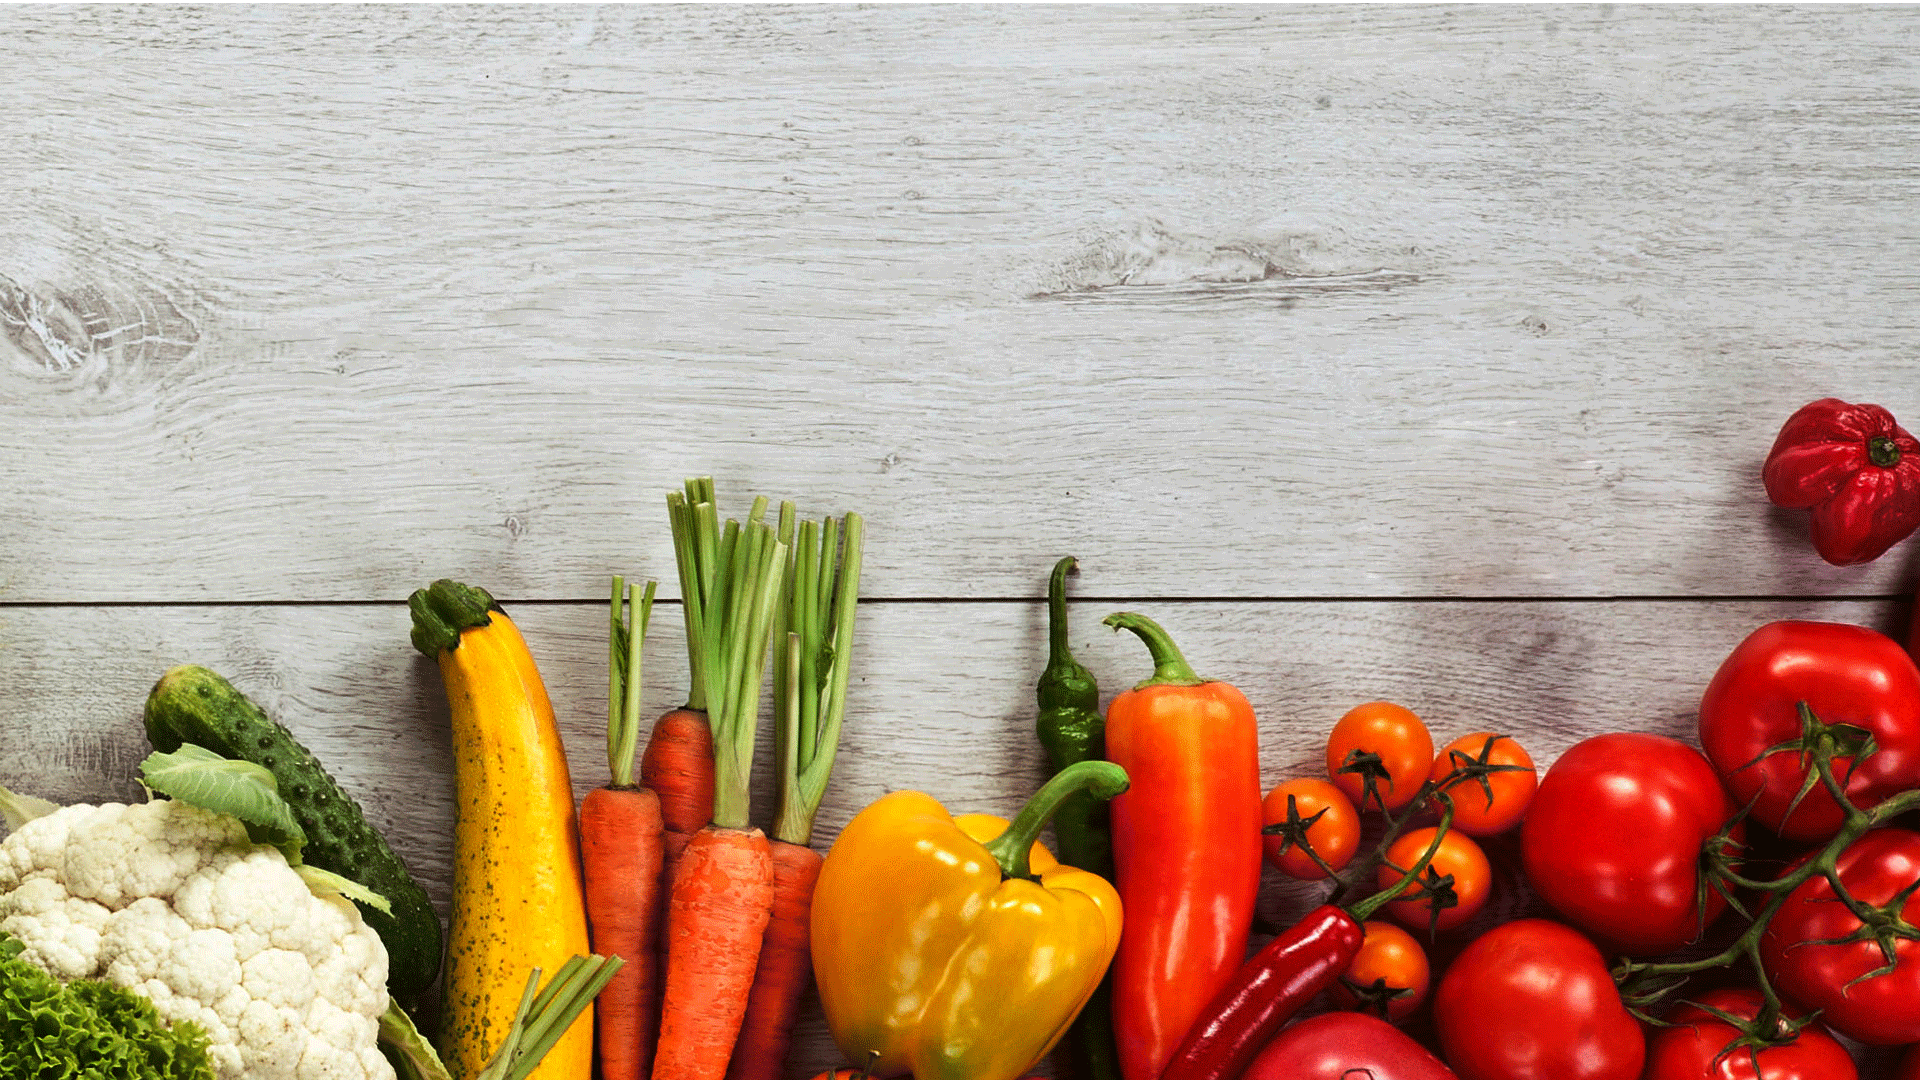 تصویر سبزیجات و میوه های رنگارنگ با زمینه خاکستری 